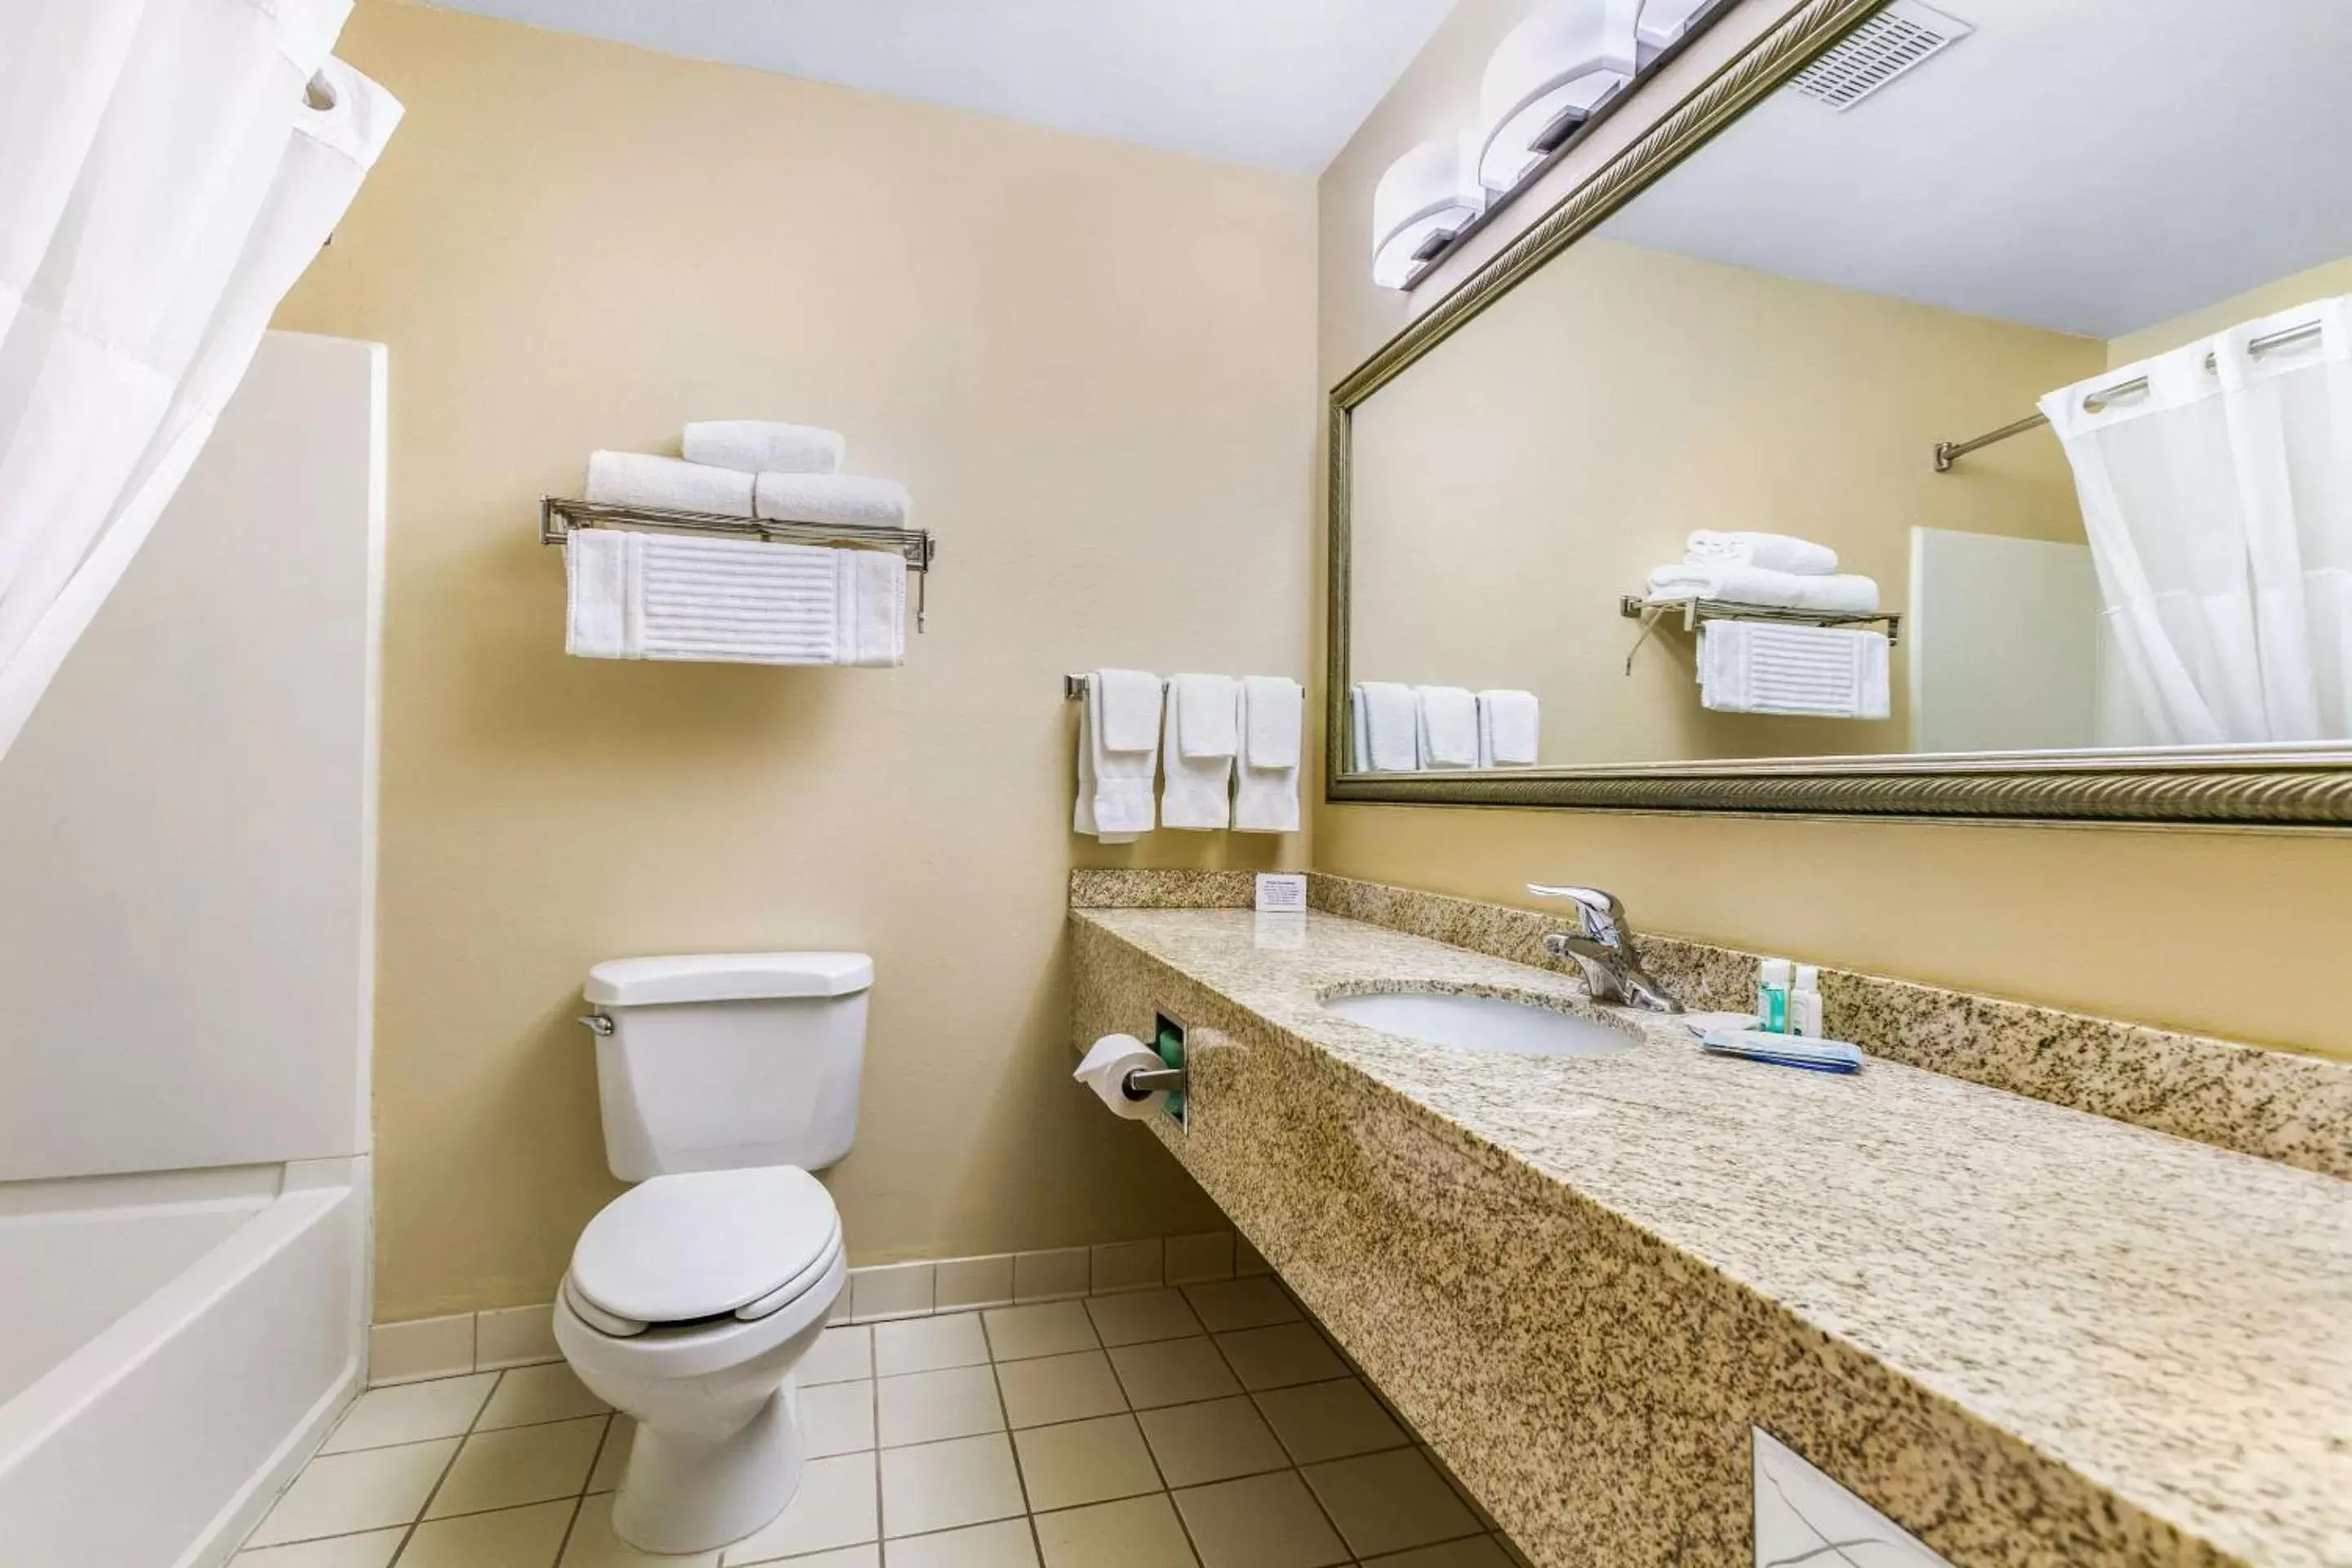 Photo of the whole room, Bathroom in Quality Inn near Monument Health Rapid City Hospital